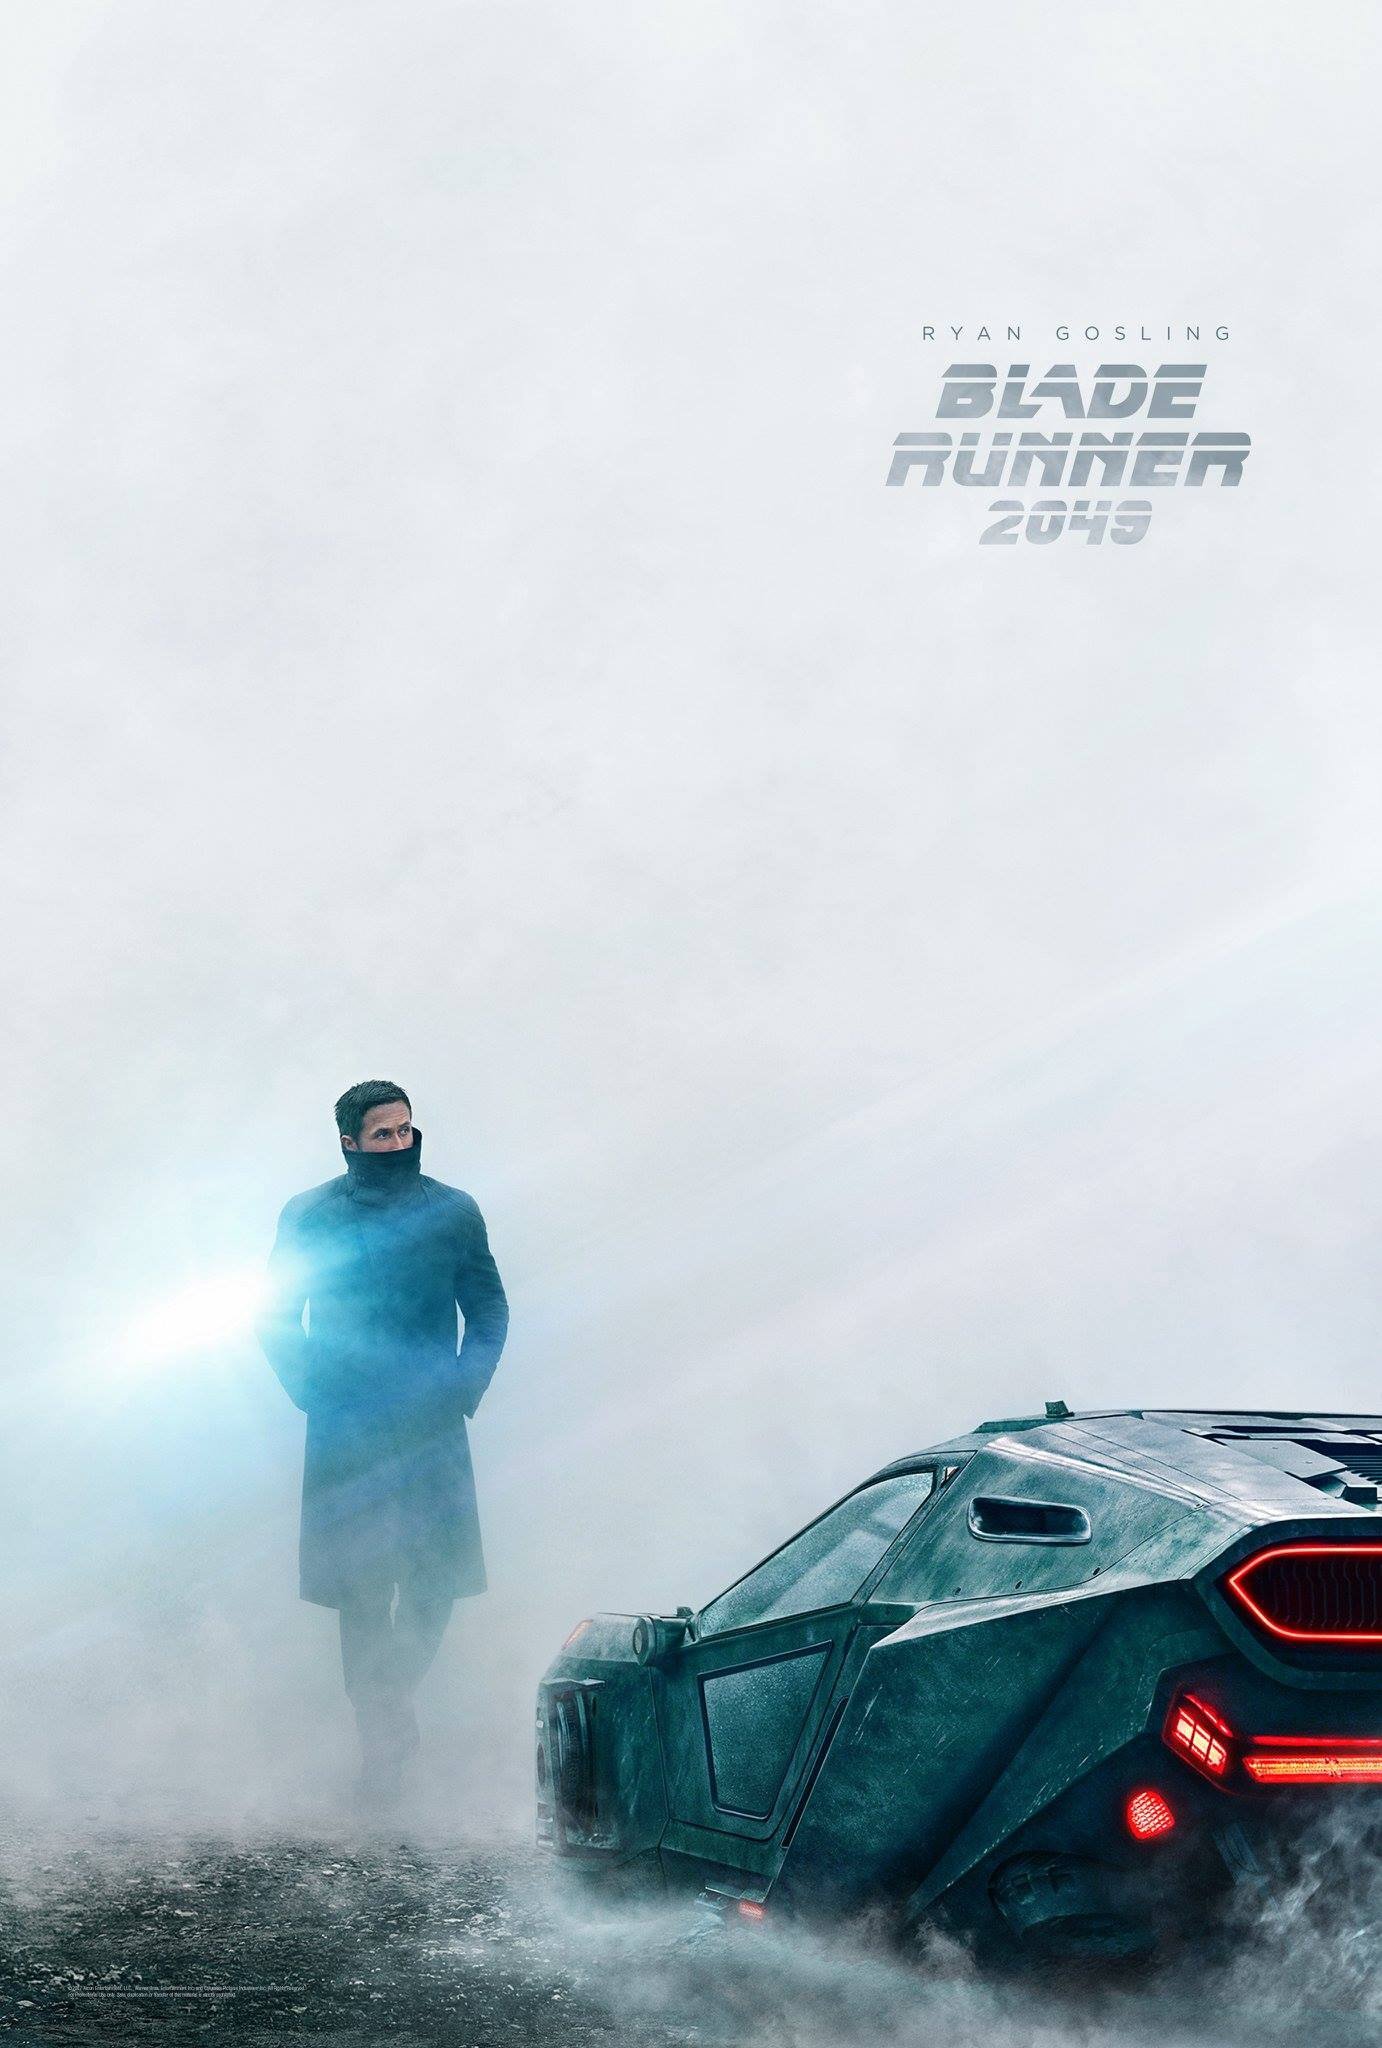 Poster pour le film Blade Runner 2049 avec Ryan Gosling